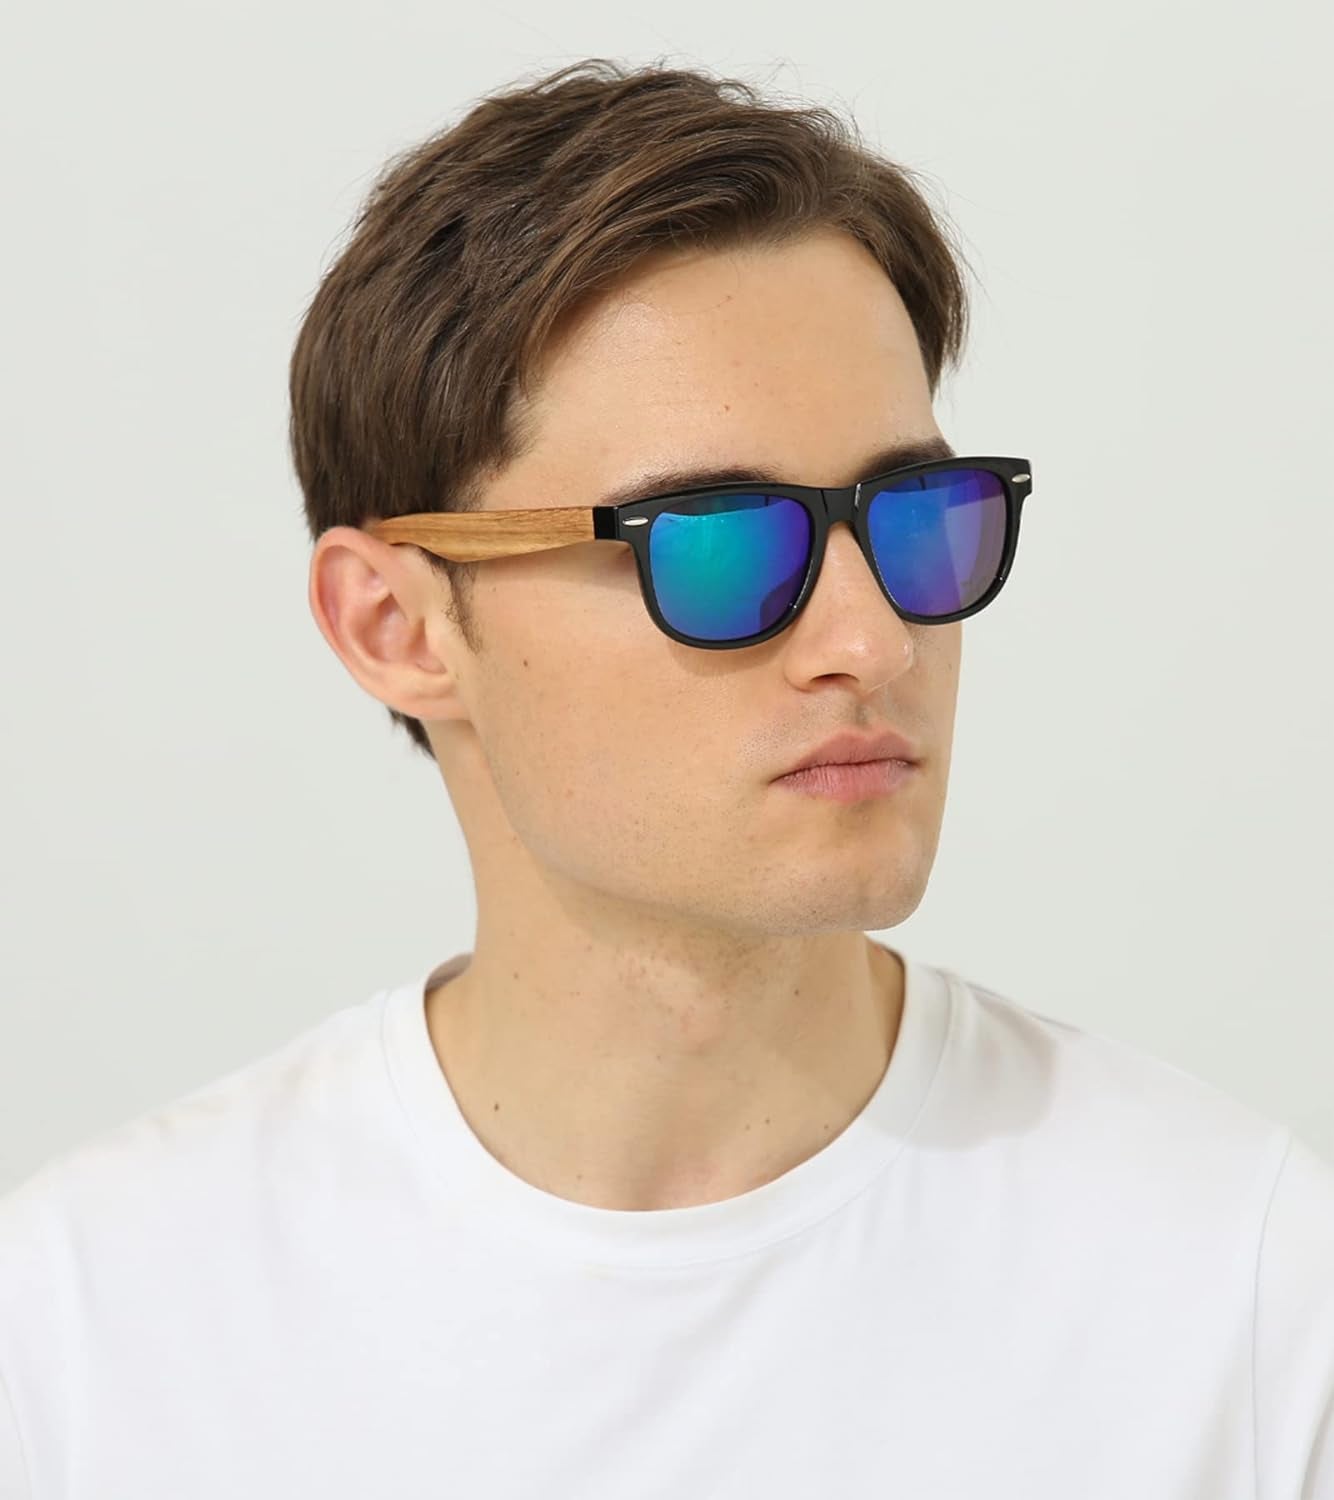 Holz Sonnenbrillen Polarisierte Sonnenbrille,Herren Damen Polarisierte Holz Brille,Polarisierende Brillengläser Mit Uv400-Schutz